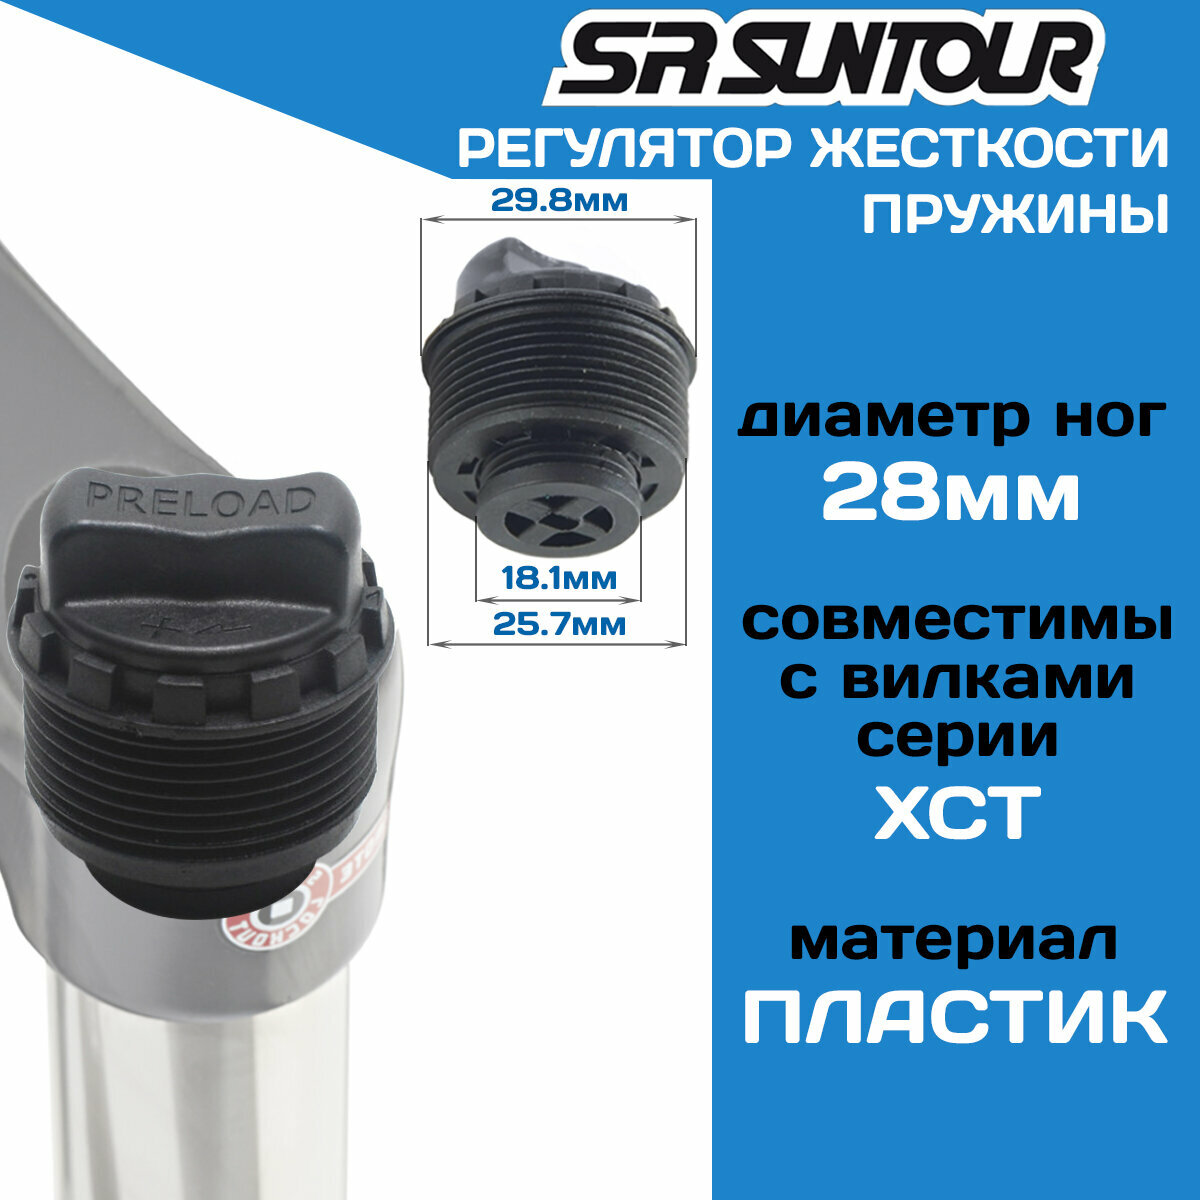 Регулятор жесткости пружины вилки Suntour FKE008-11 Ф28мм, для вилок XCT